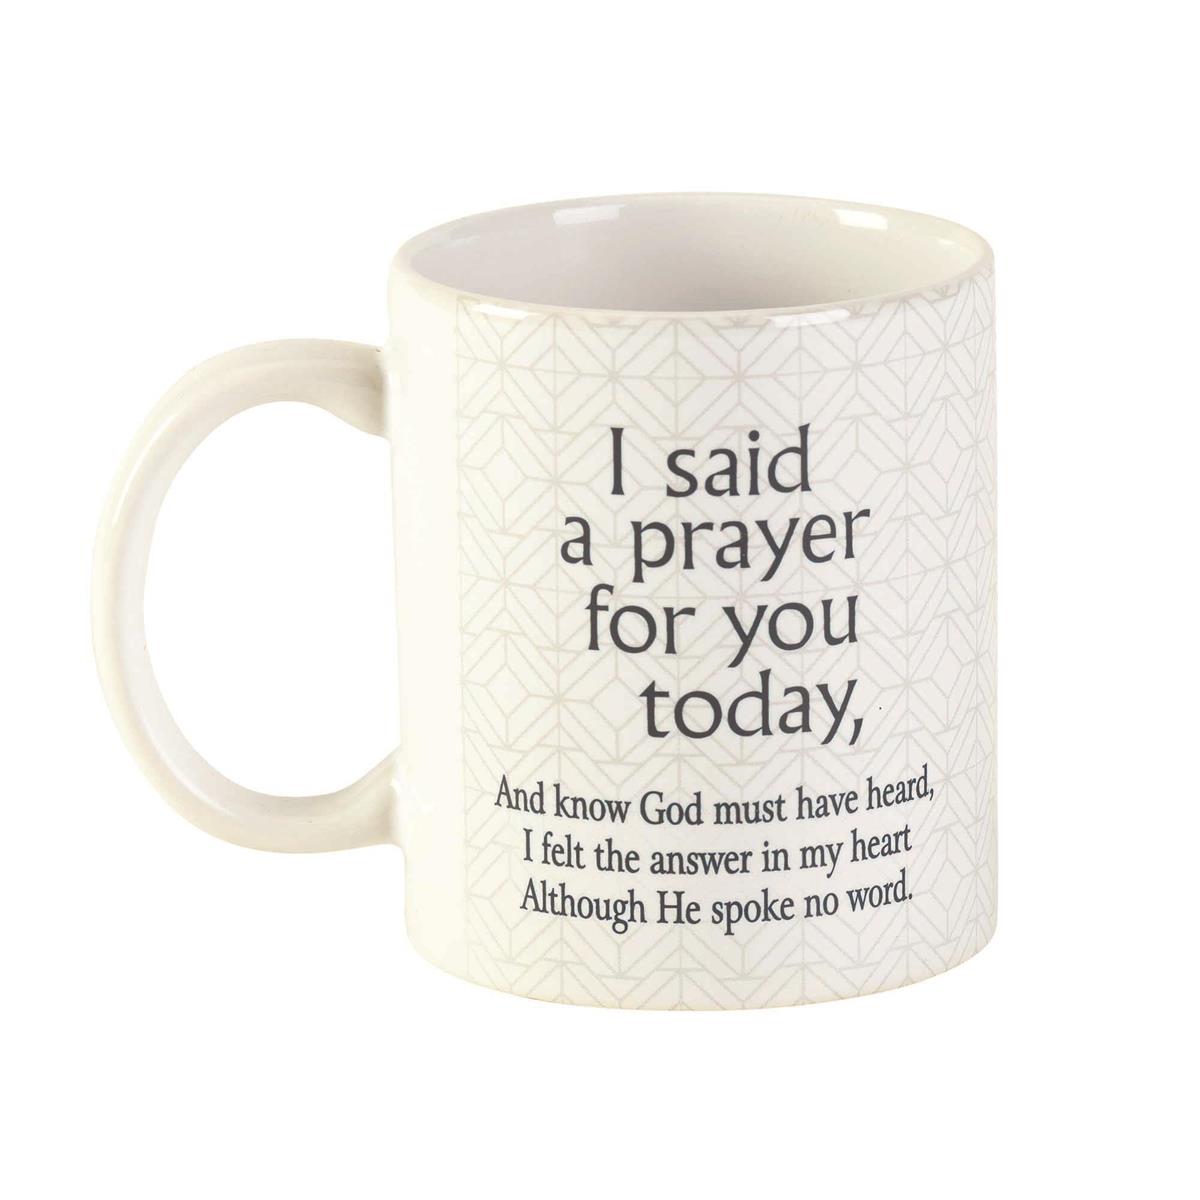 https://shop.catholicsupply.com/Shared/Images/Product/I-Said-A-Prayer-For-You-Mug/120124.jpg